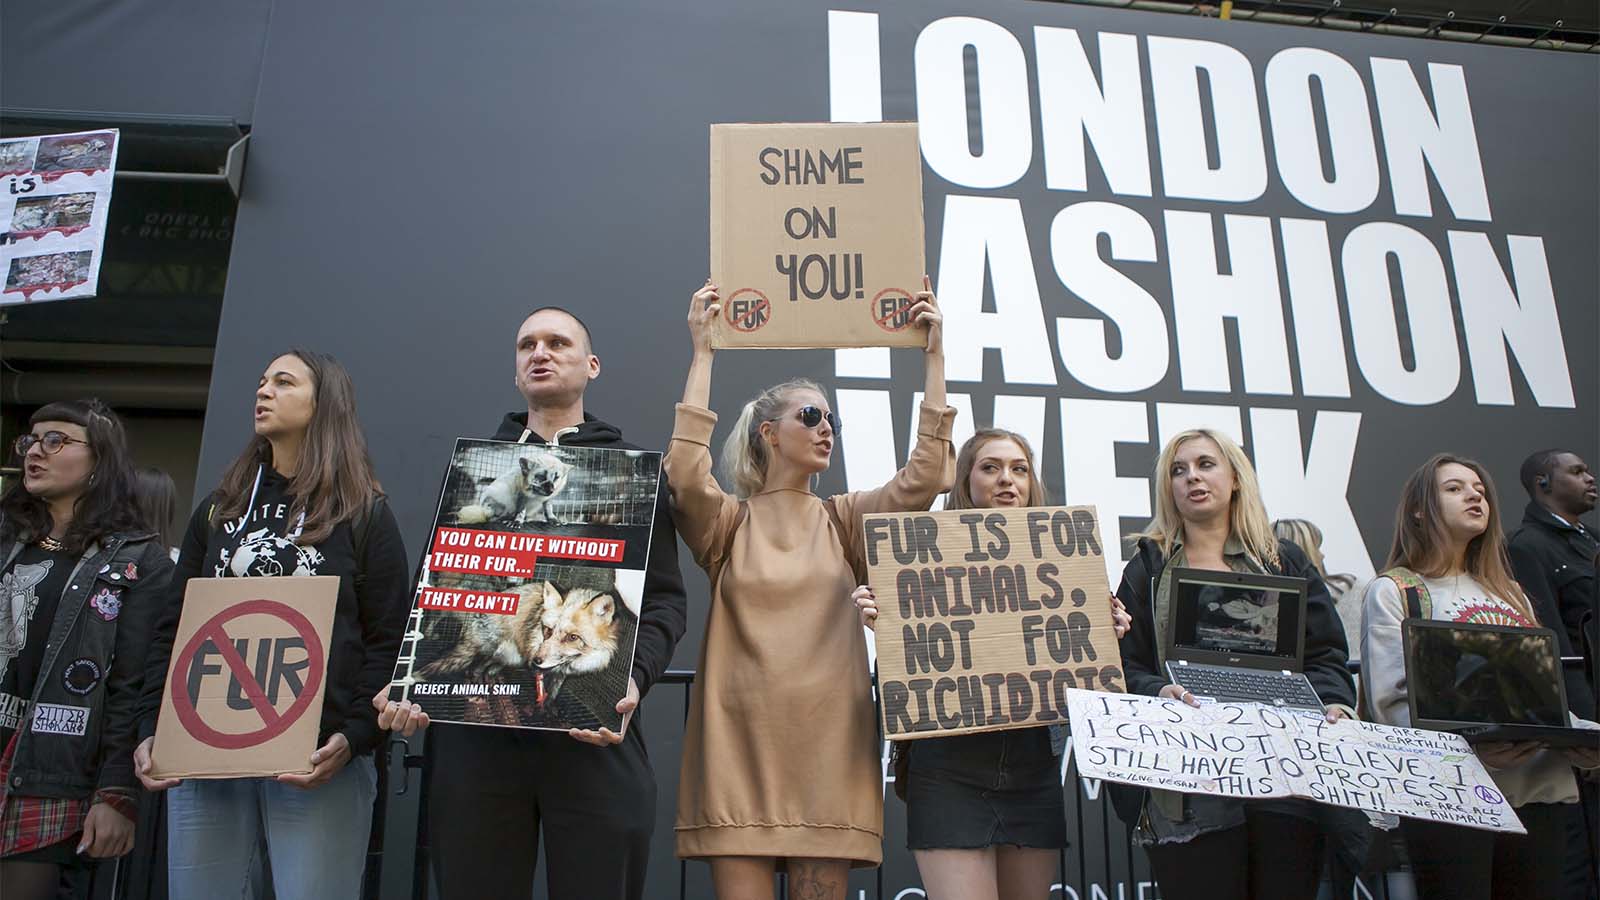 הפגנה נגד שימוש בפרווה באופנה מול שבוע האופנה בלונדון. ספטמבר 2017 (Elena Rostunova / Shutterstock.com)